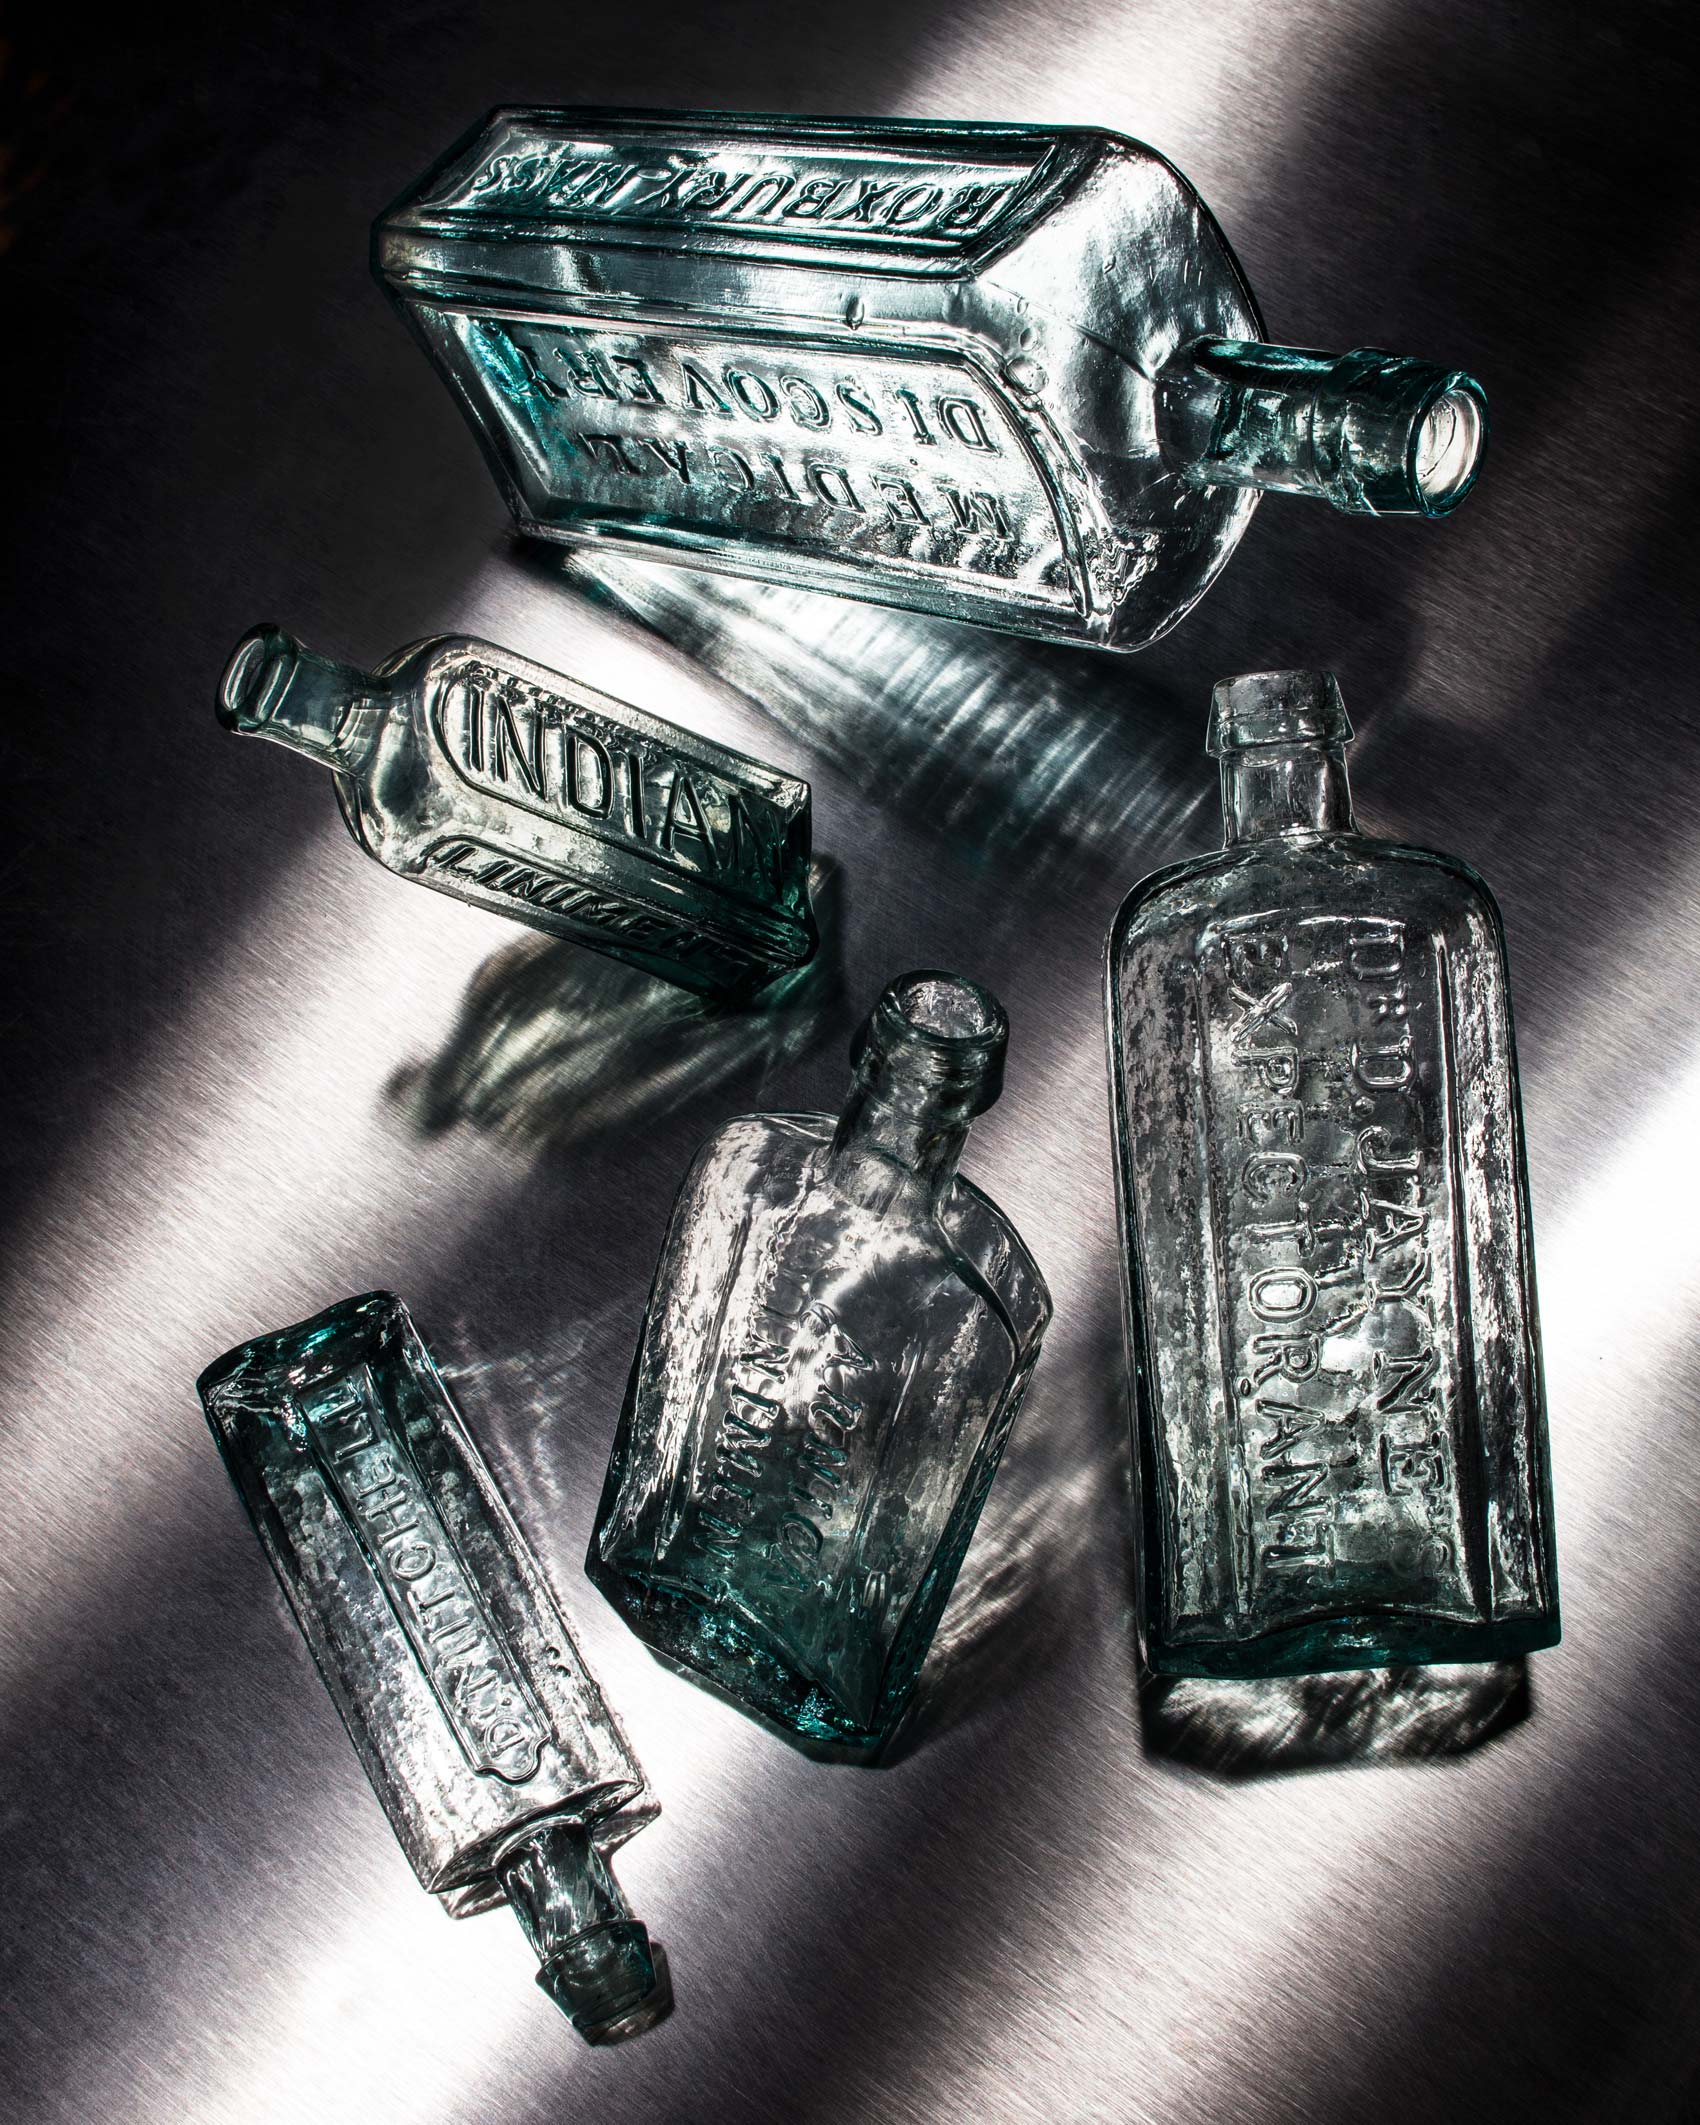 Antique Medicine Bottles 